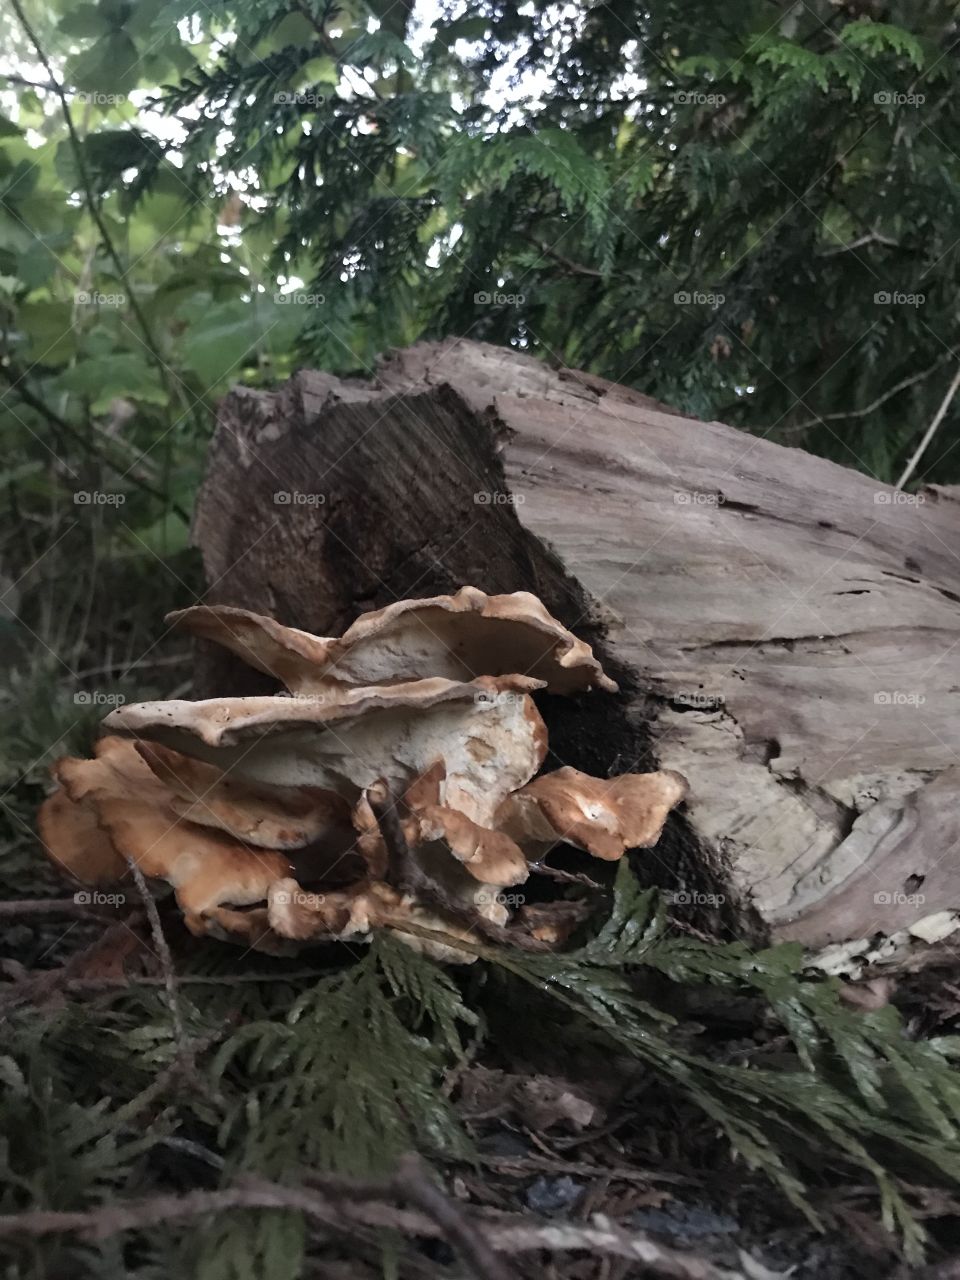 Shroom on a Log